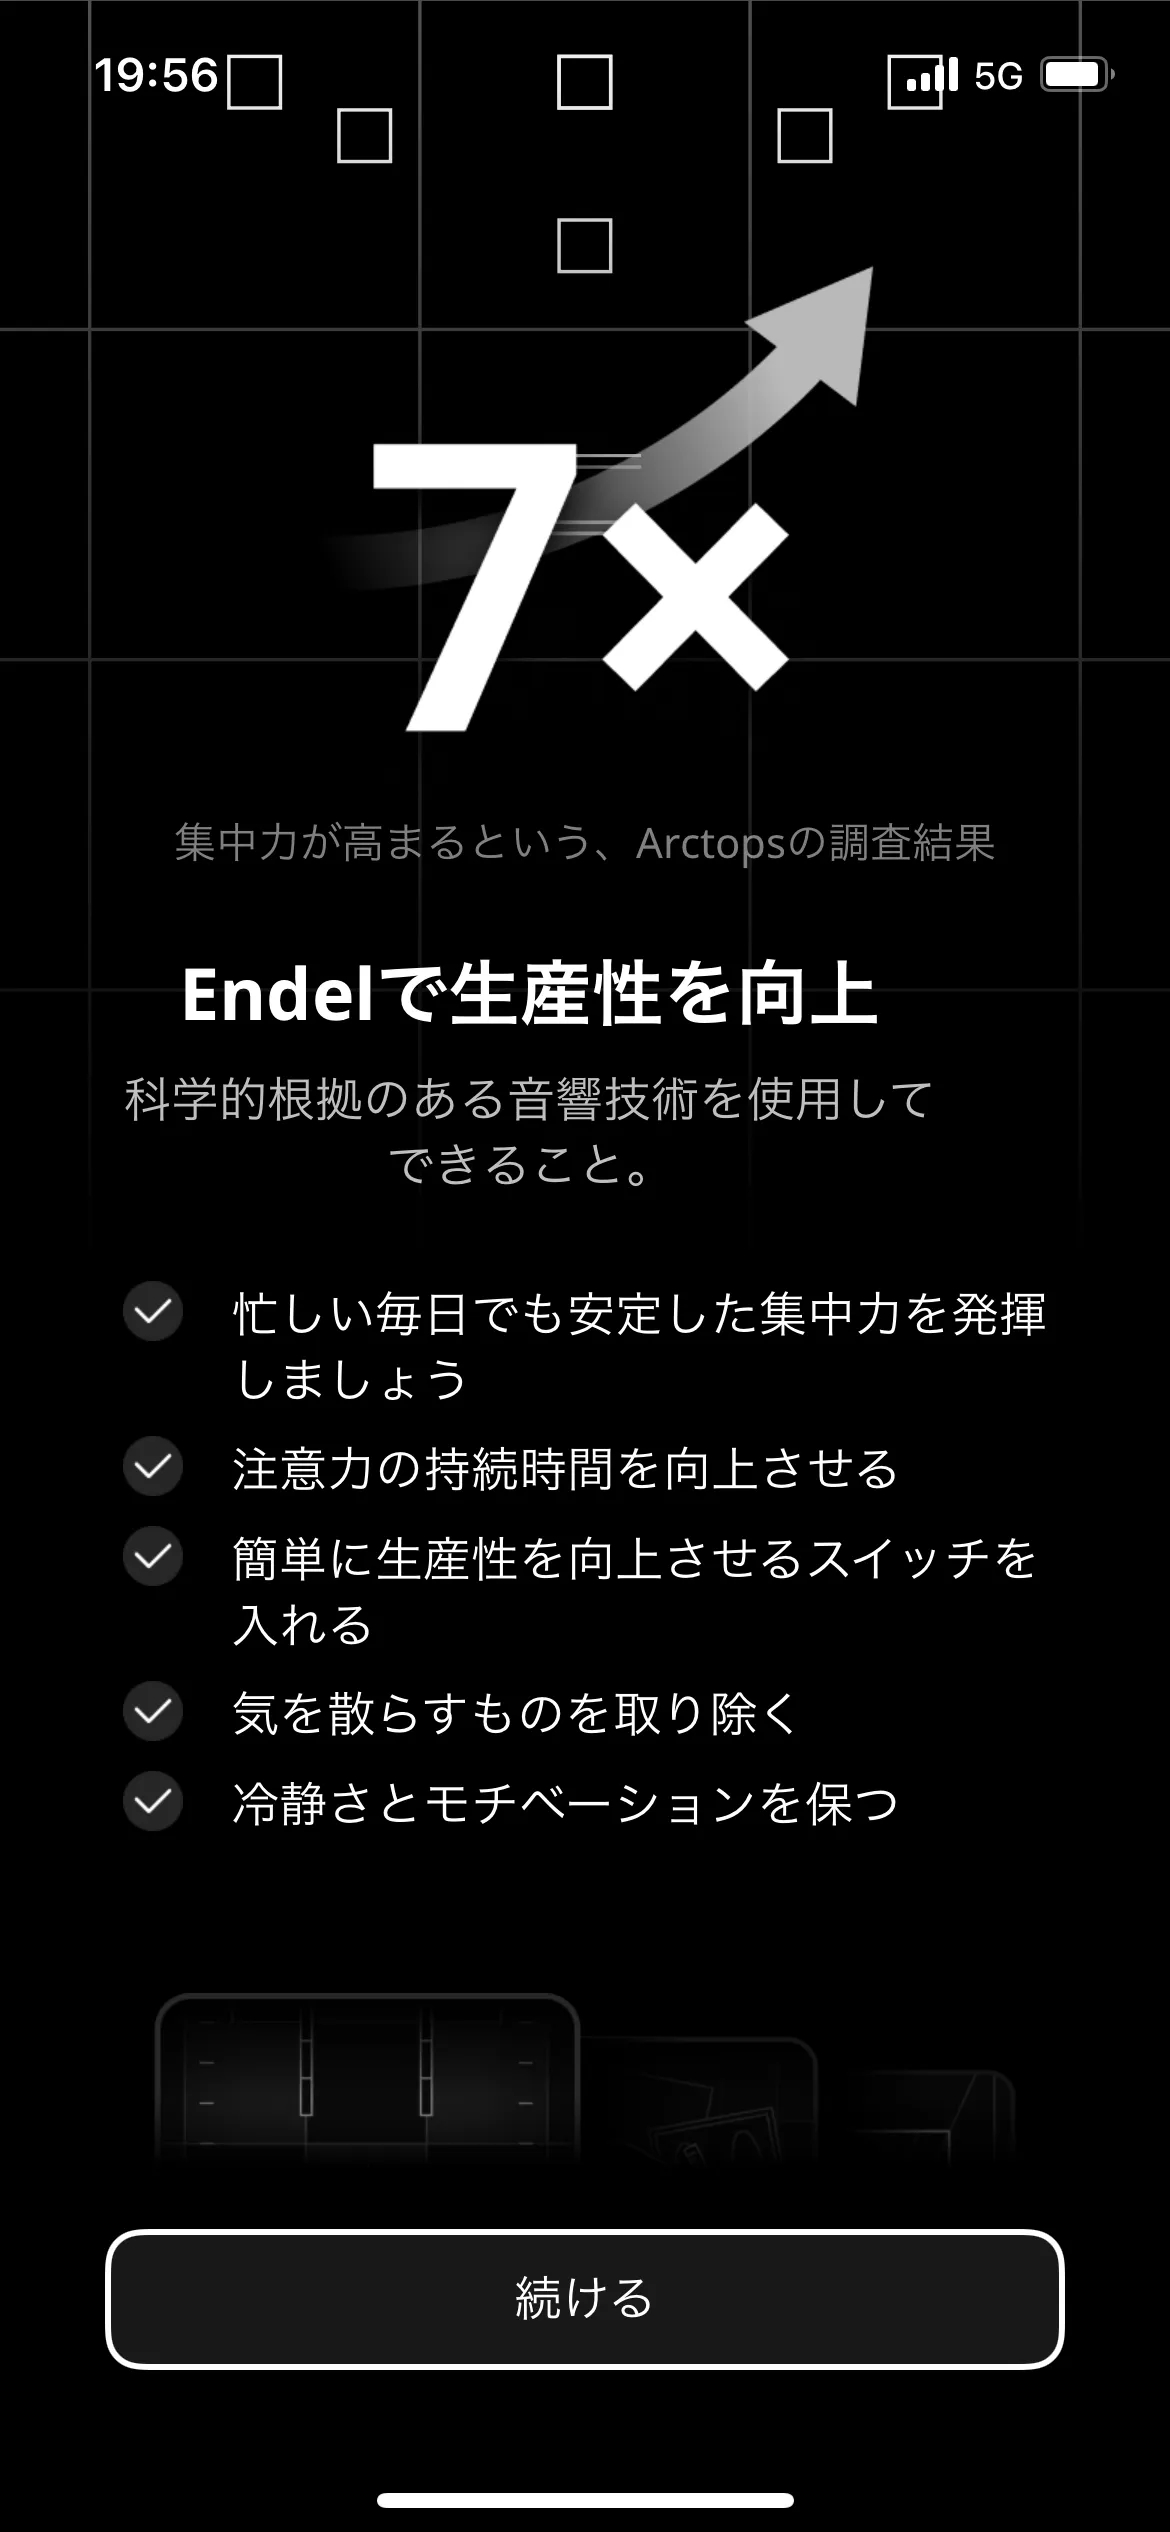 Endel オンボーディング screen